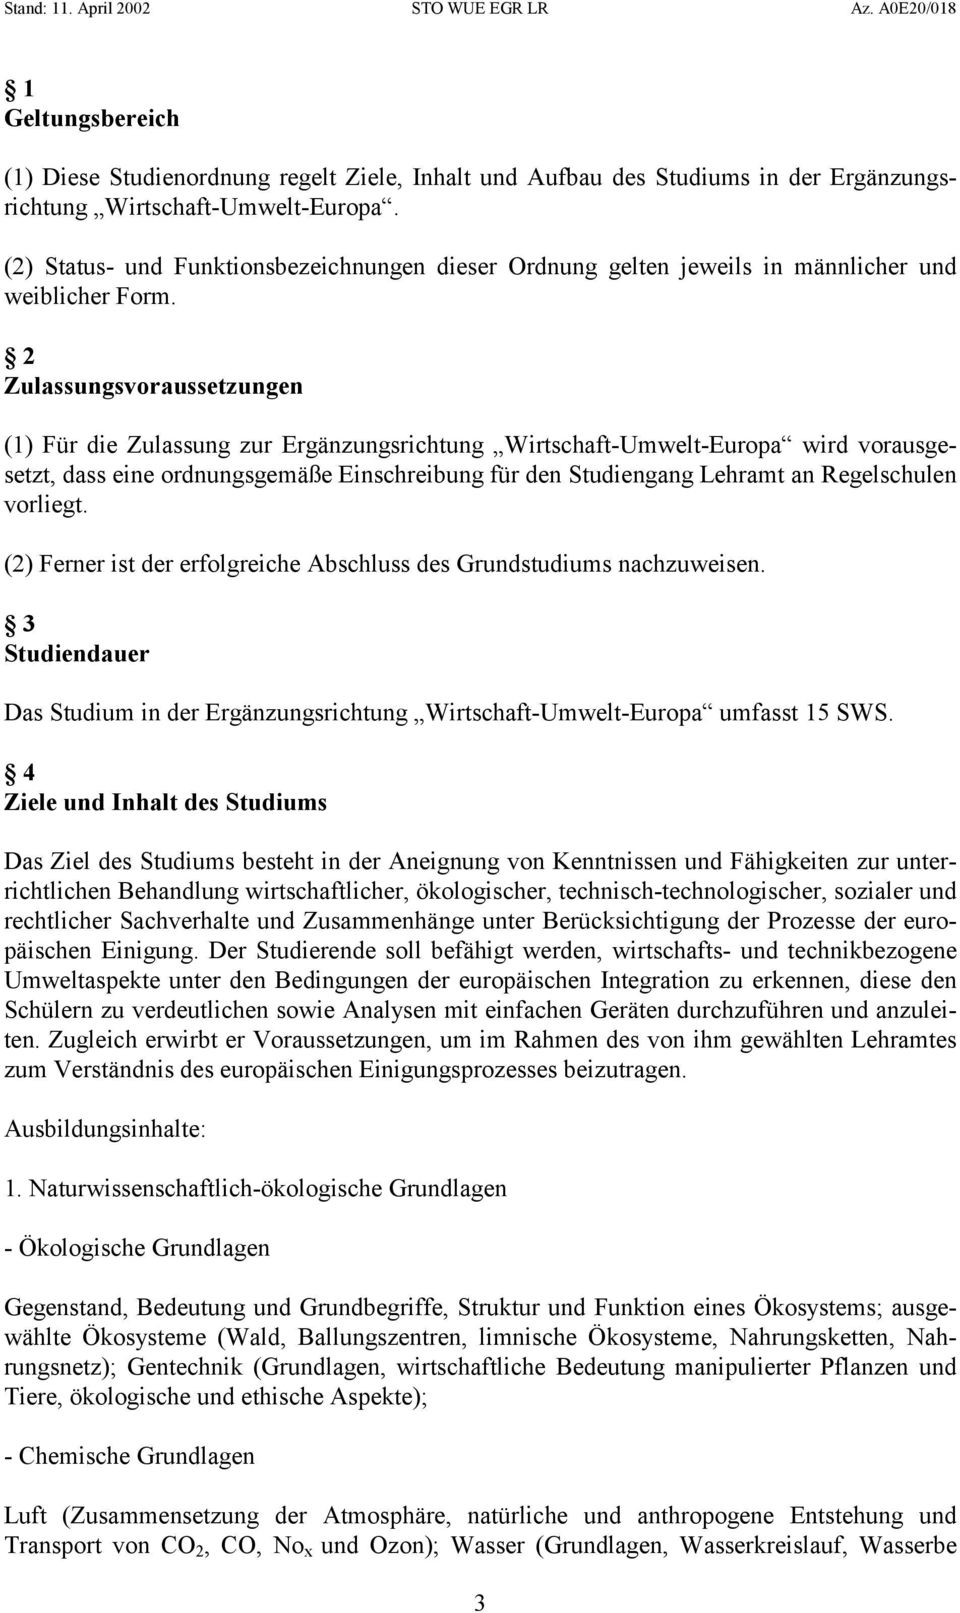 2 Zulassungsvoraussetzungen (1) Für die Zulassung zur Ergänzungsrichtung Wirtschaft-Umwelt-Europa wird vorausgesetzt, dass eine ordnungsgemäße Einschreibung für den Studiengang Lehramt an